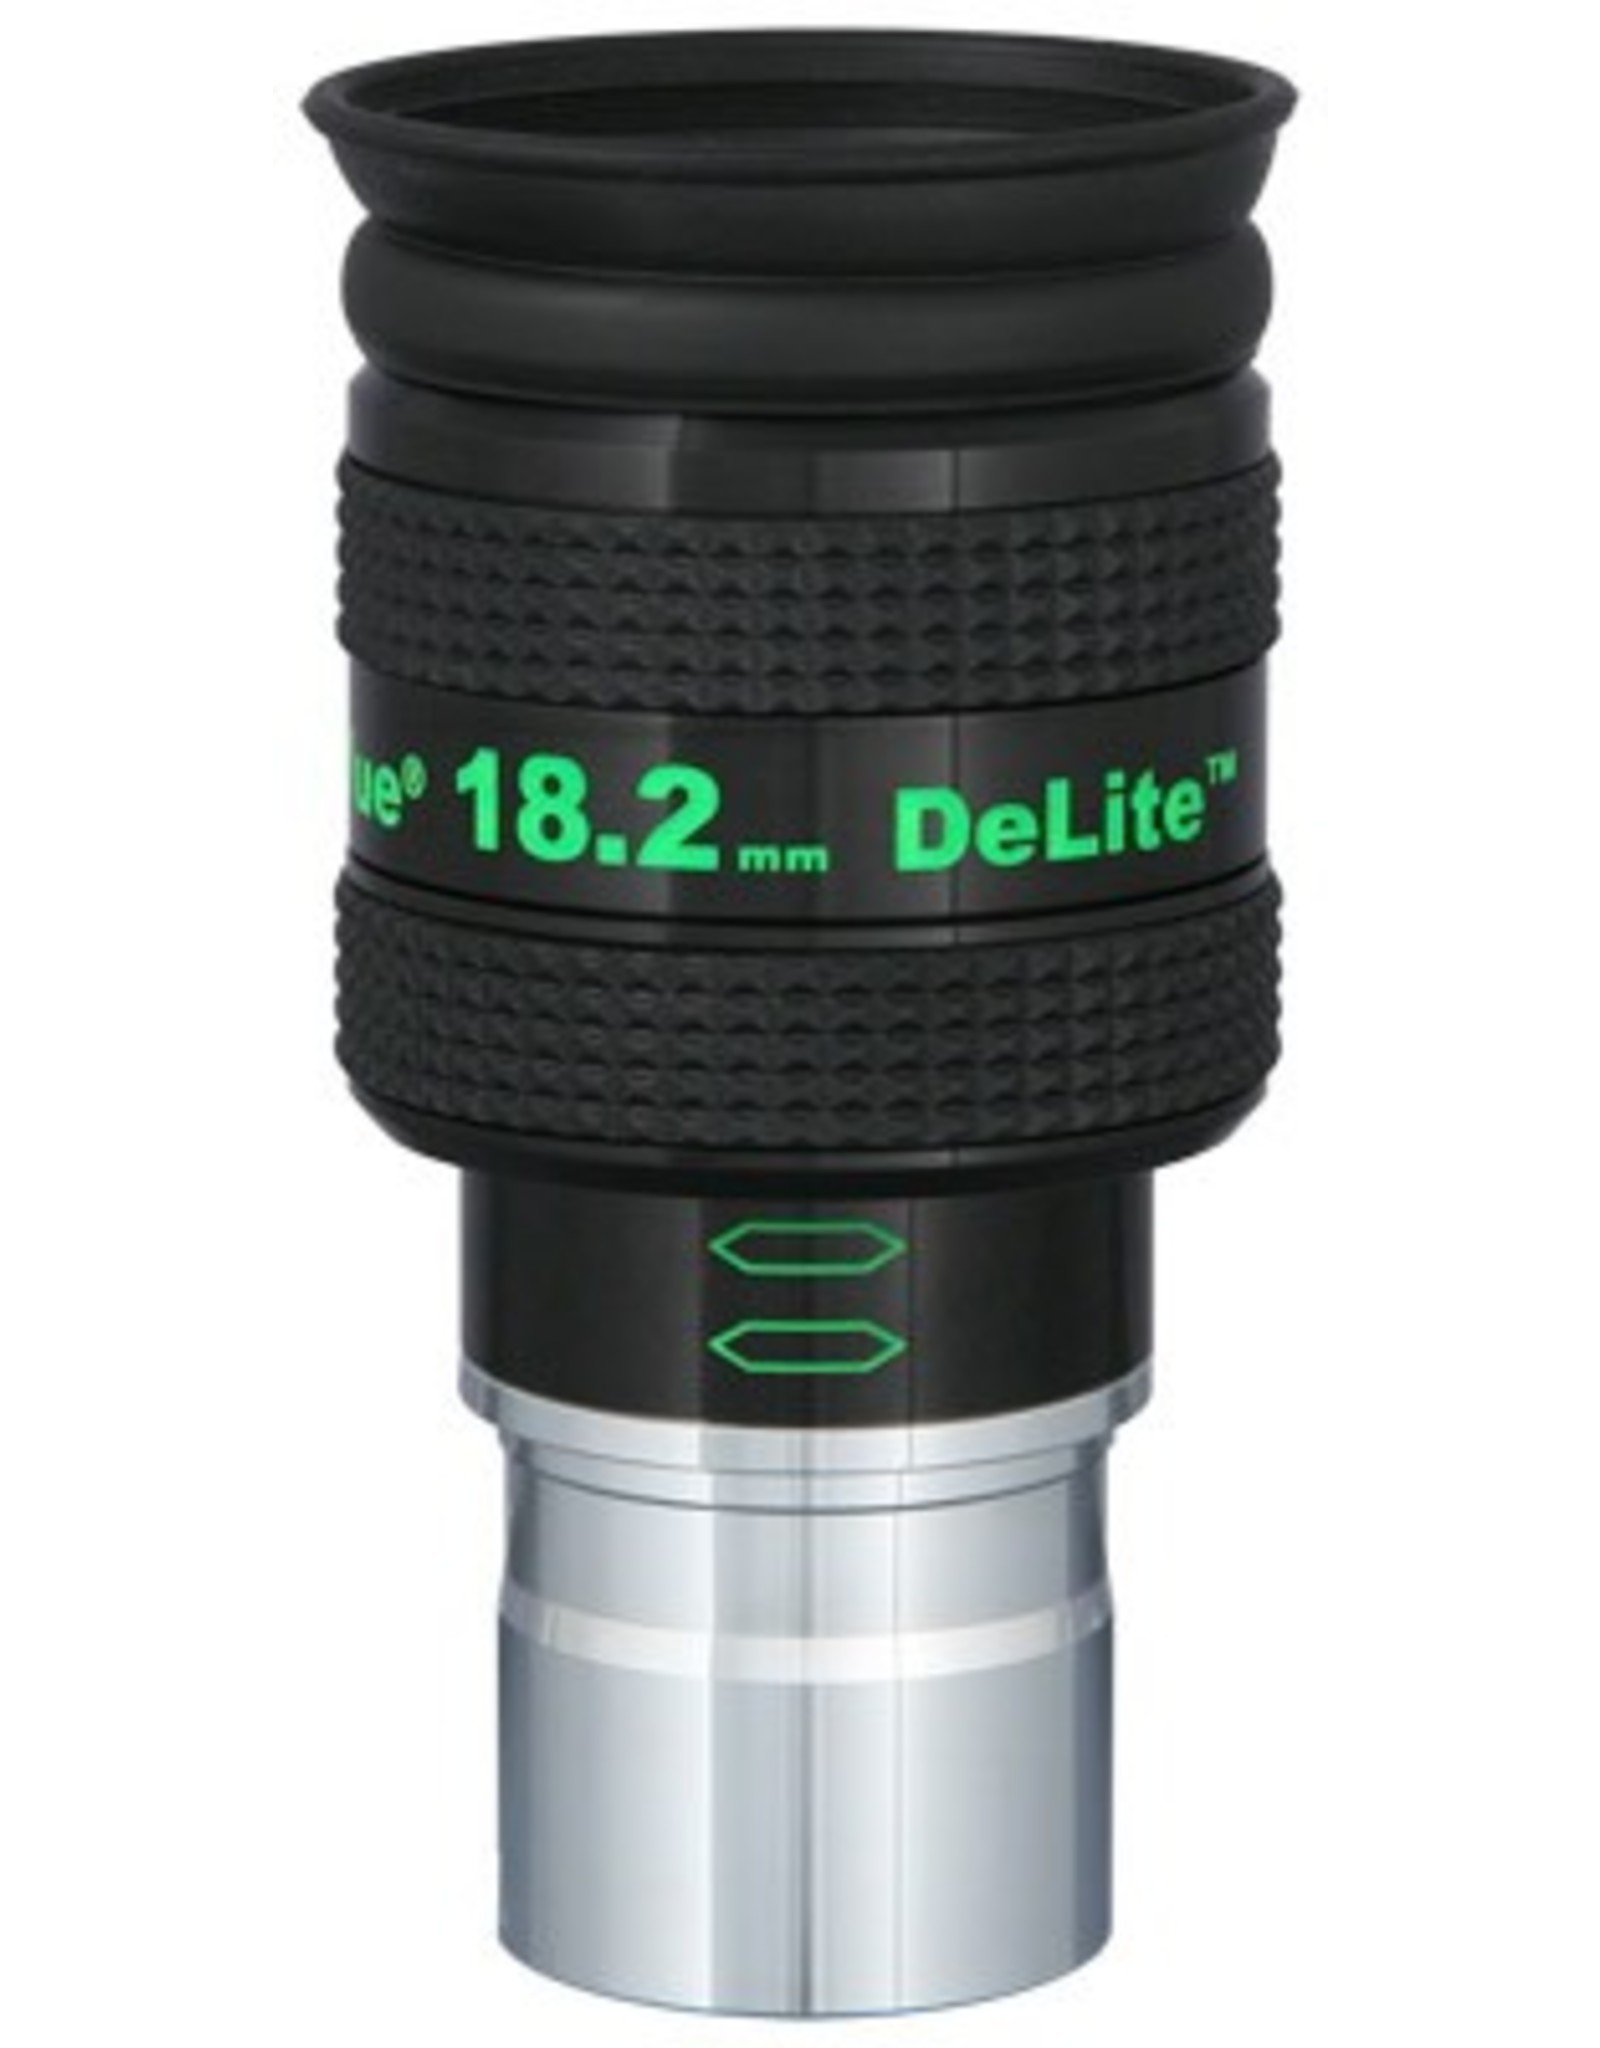 Tele Vue DeLite 18.2mm Eyepiece 1.25